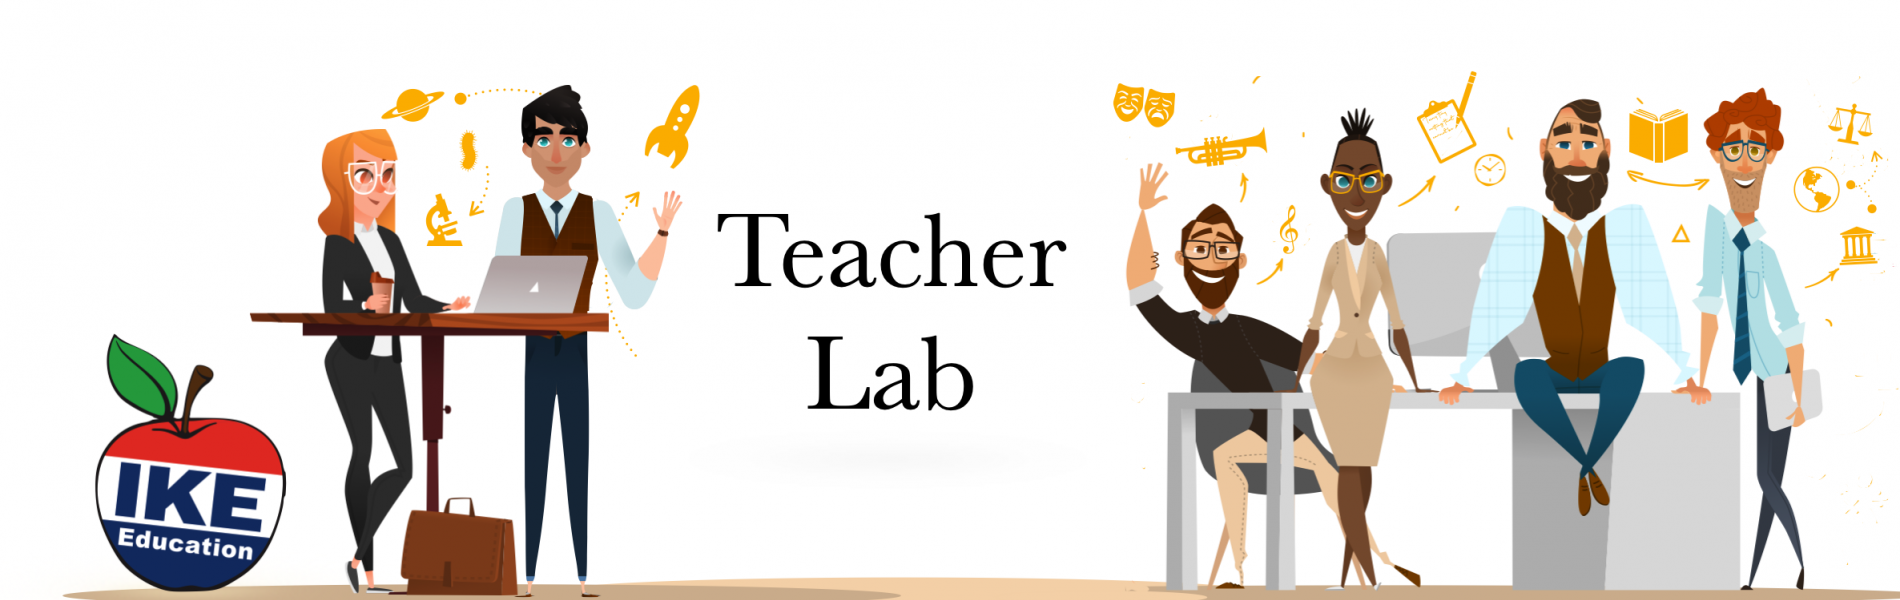 Teacher Lab banner